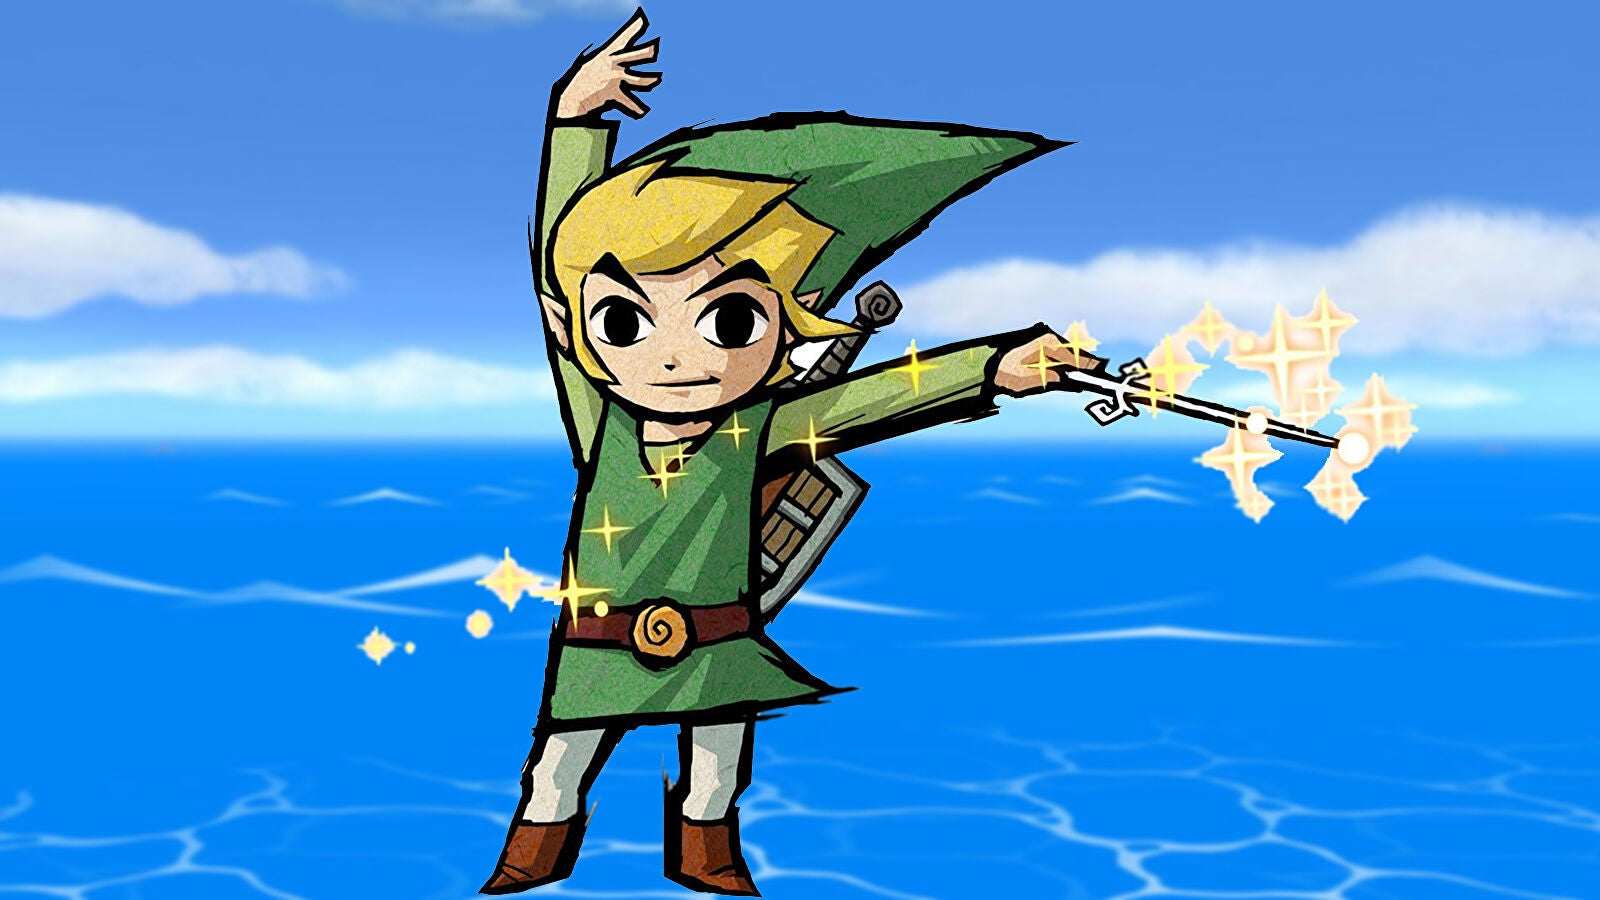 Immagine di The Legend of Zelda The Wind Waker in origine aveva Link che suonava...il theremin